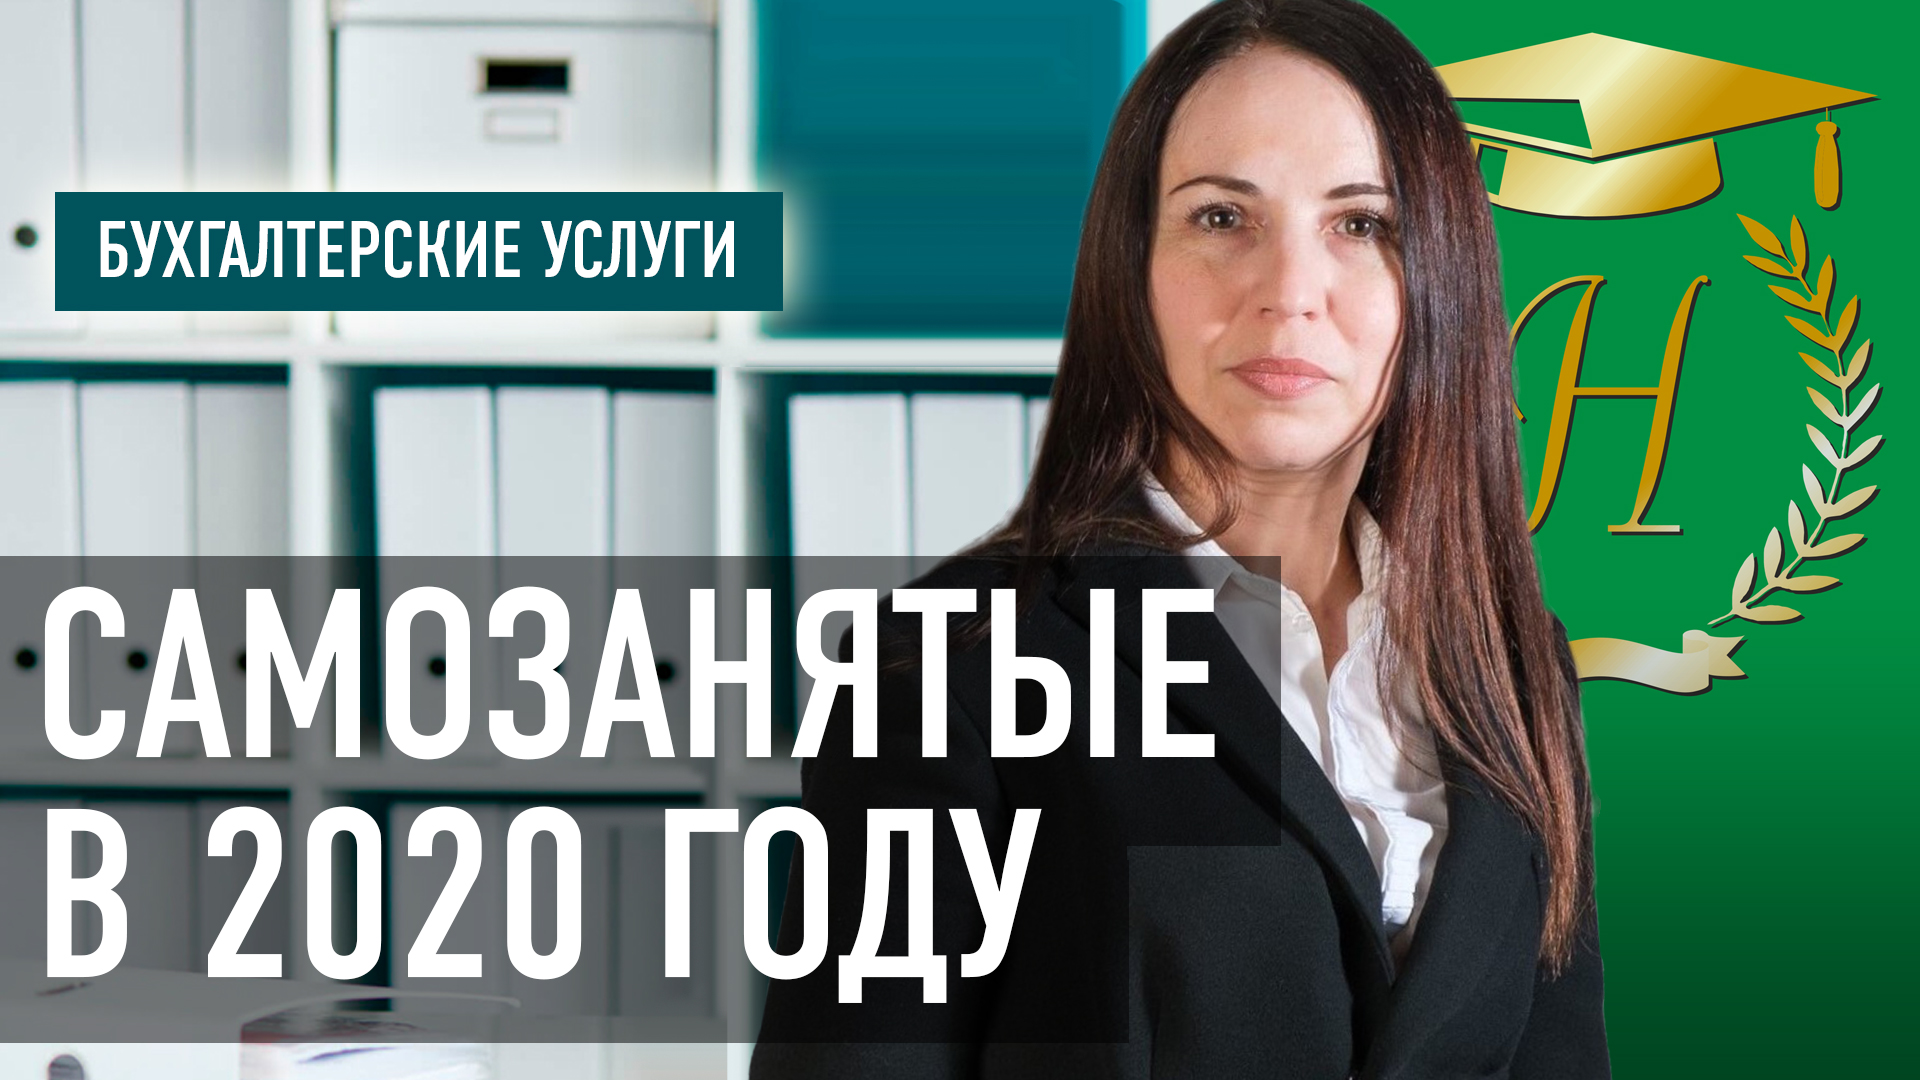 »Самозанятые в 2020 году», Татьяна Космачёва